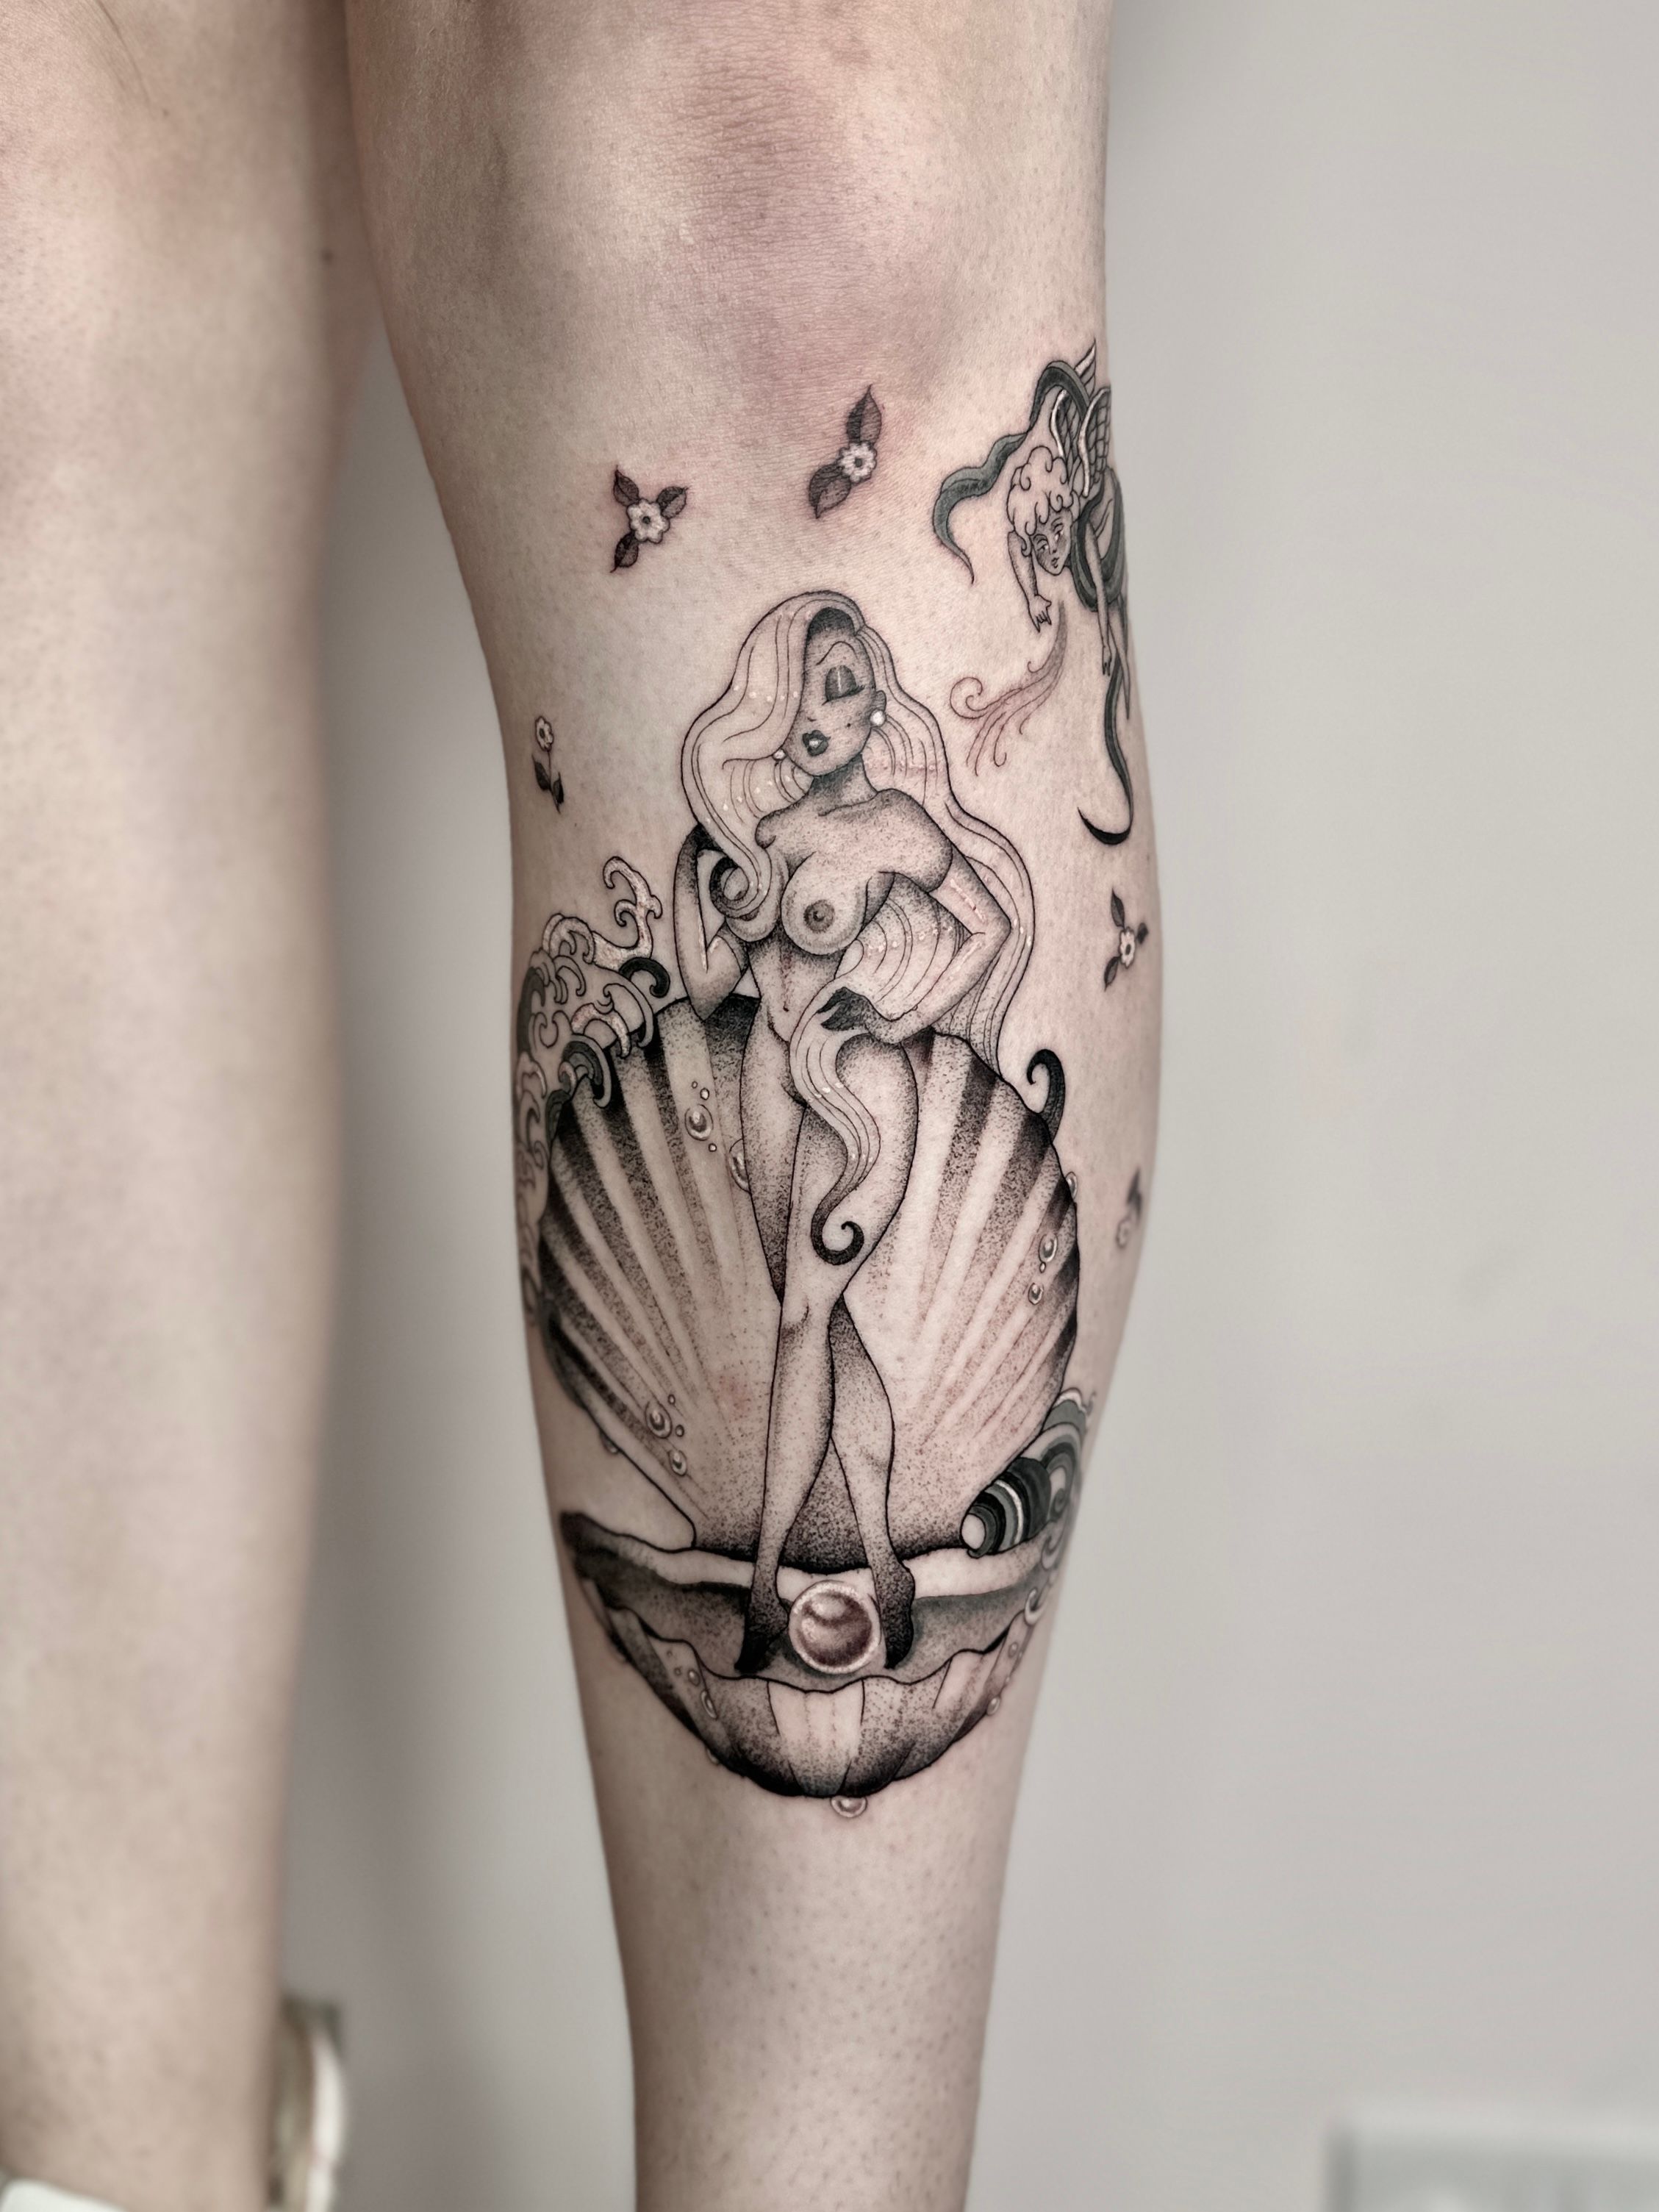 Jessica rabbit time-lapse #tattoo #tattoos #tattooed #jessicarabbit #... |  TikTok